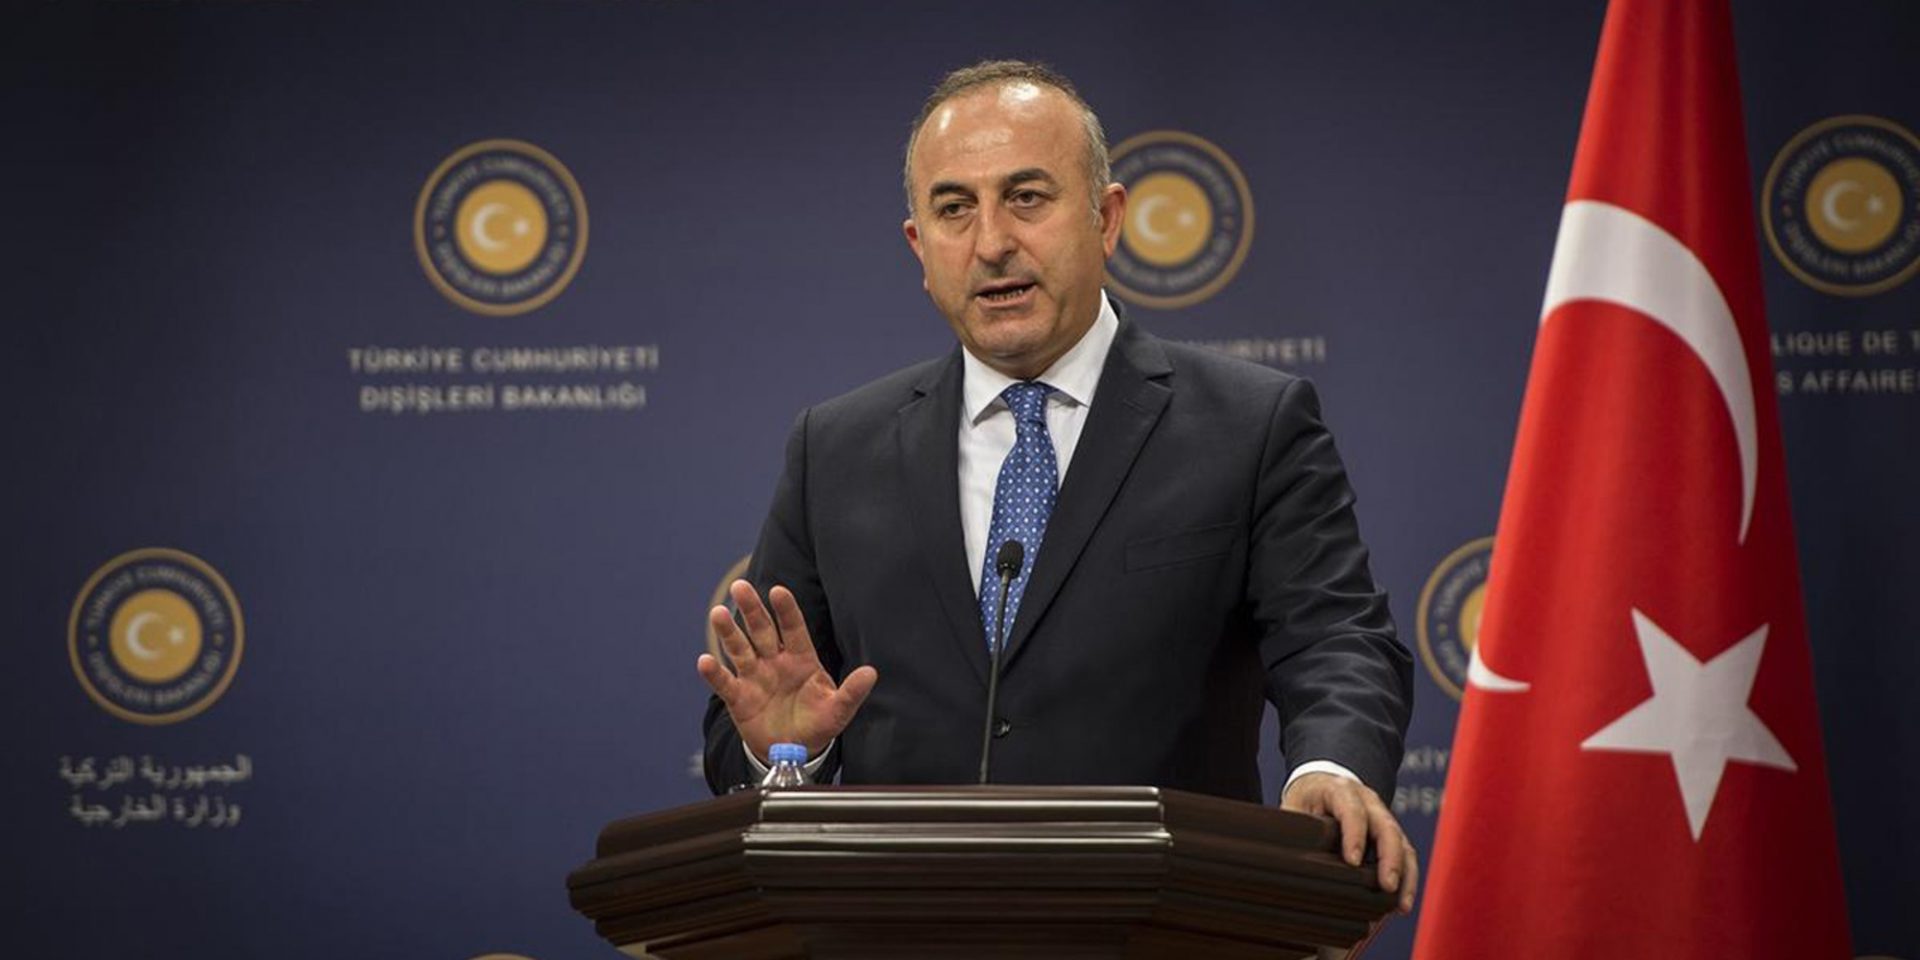 Τουρκικό ΥΠΕΞ: «Θα προστατέψουμε τα δικαιώματα της τουρκικής μειονότητας στην Δυτική Θράκη»!